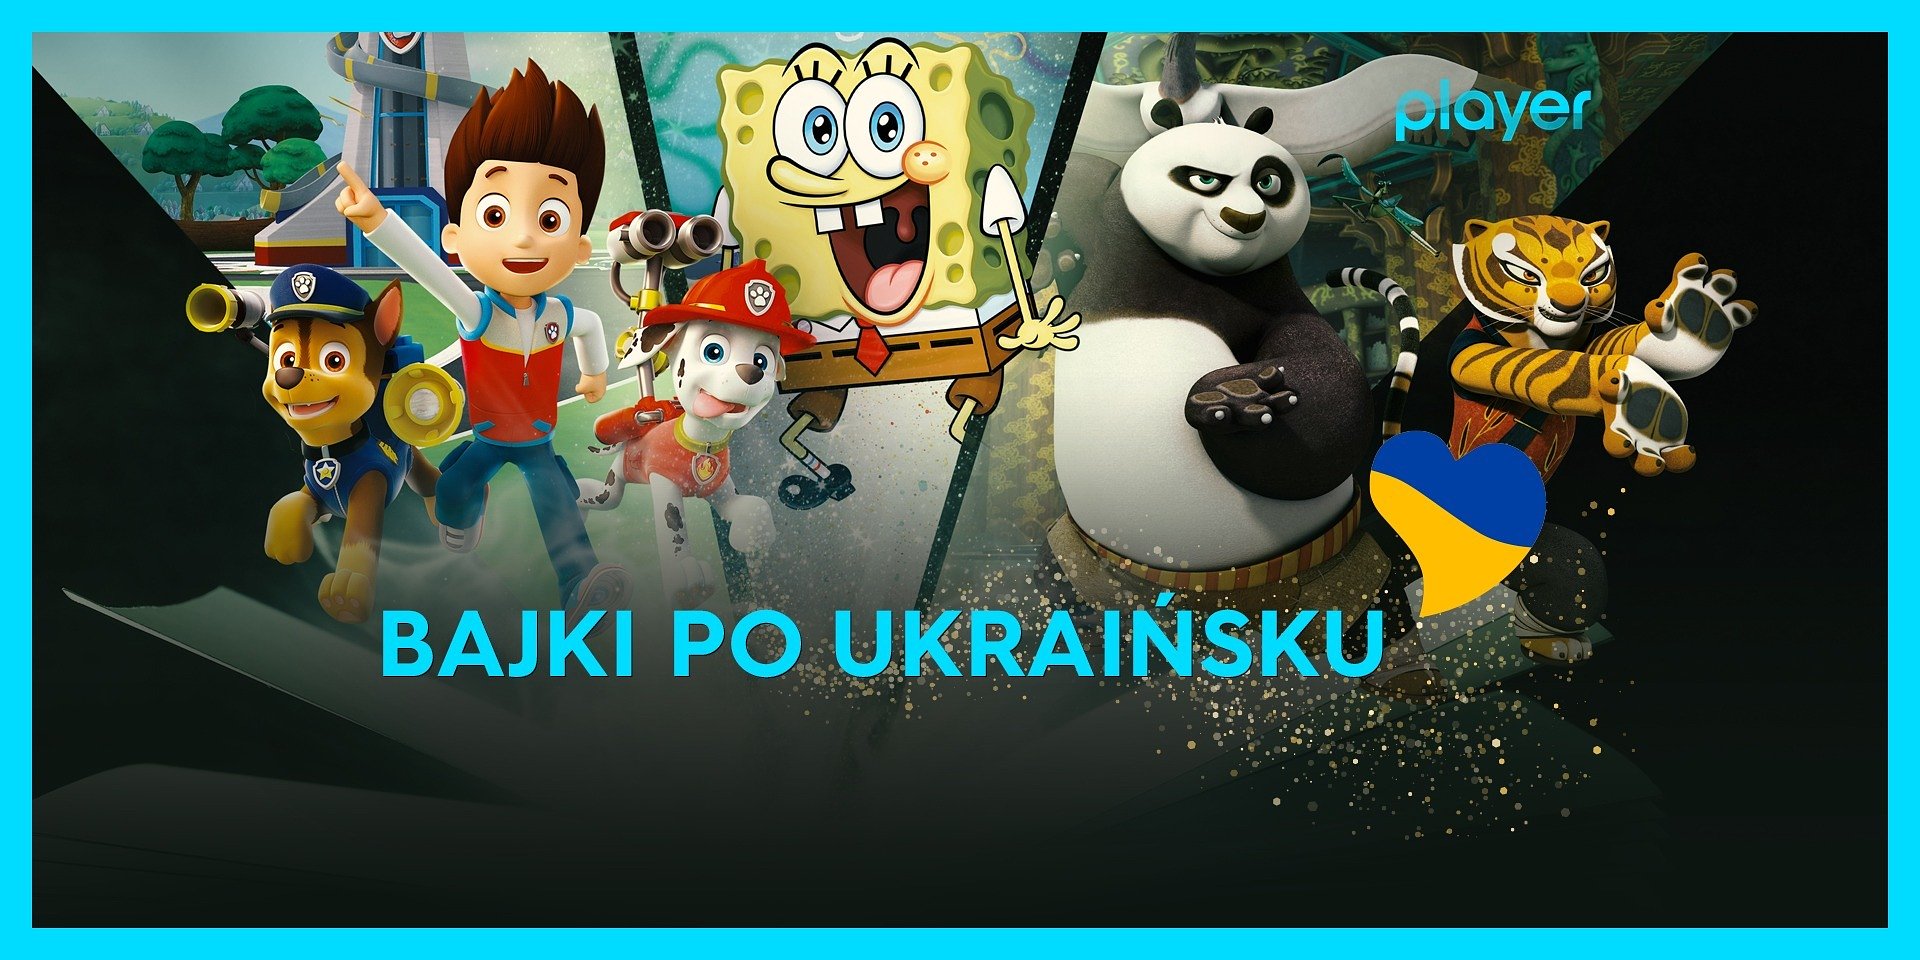 Programy informacyjne oraz bajki po ukraińsku w Player! Są też hitowe filmy i seriale na marzec!